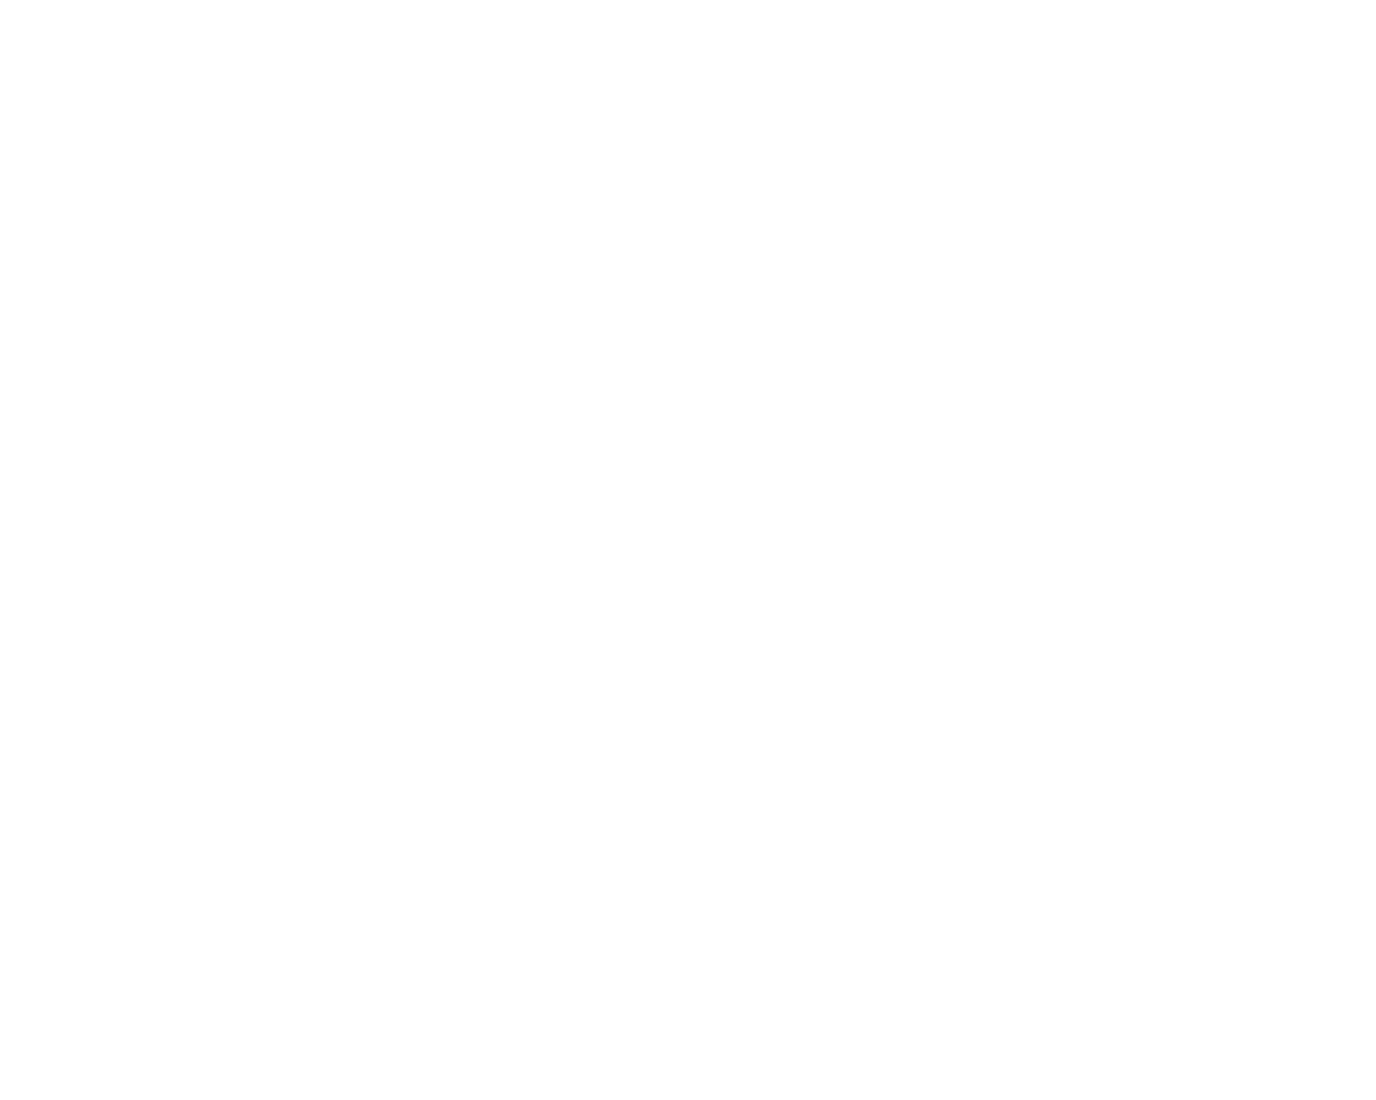 innovate-for-impact-festival